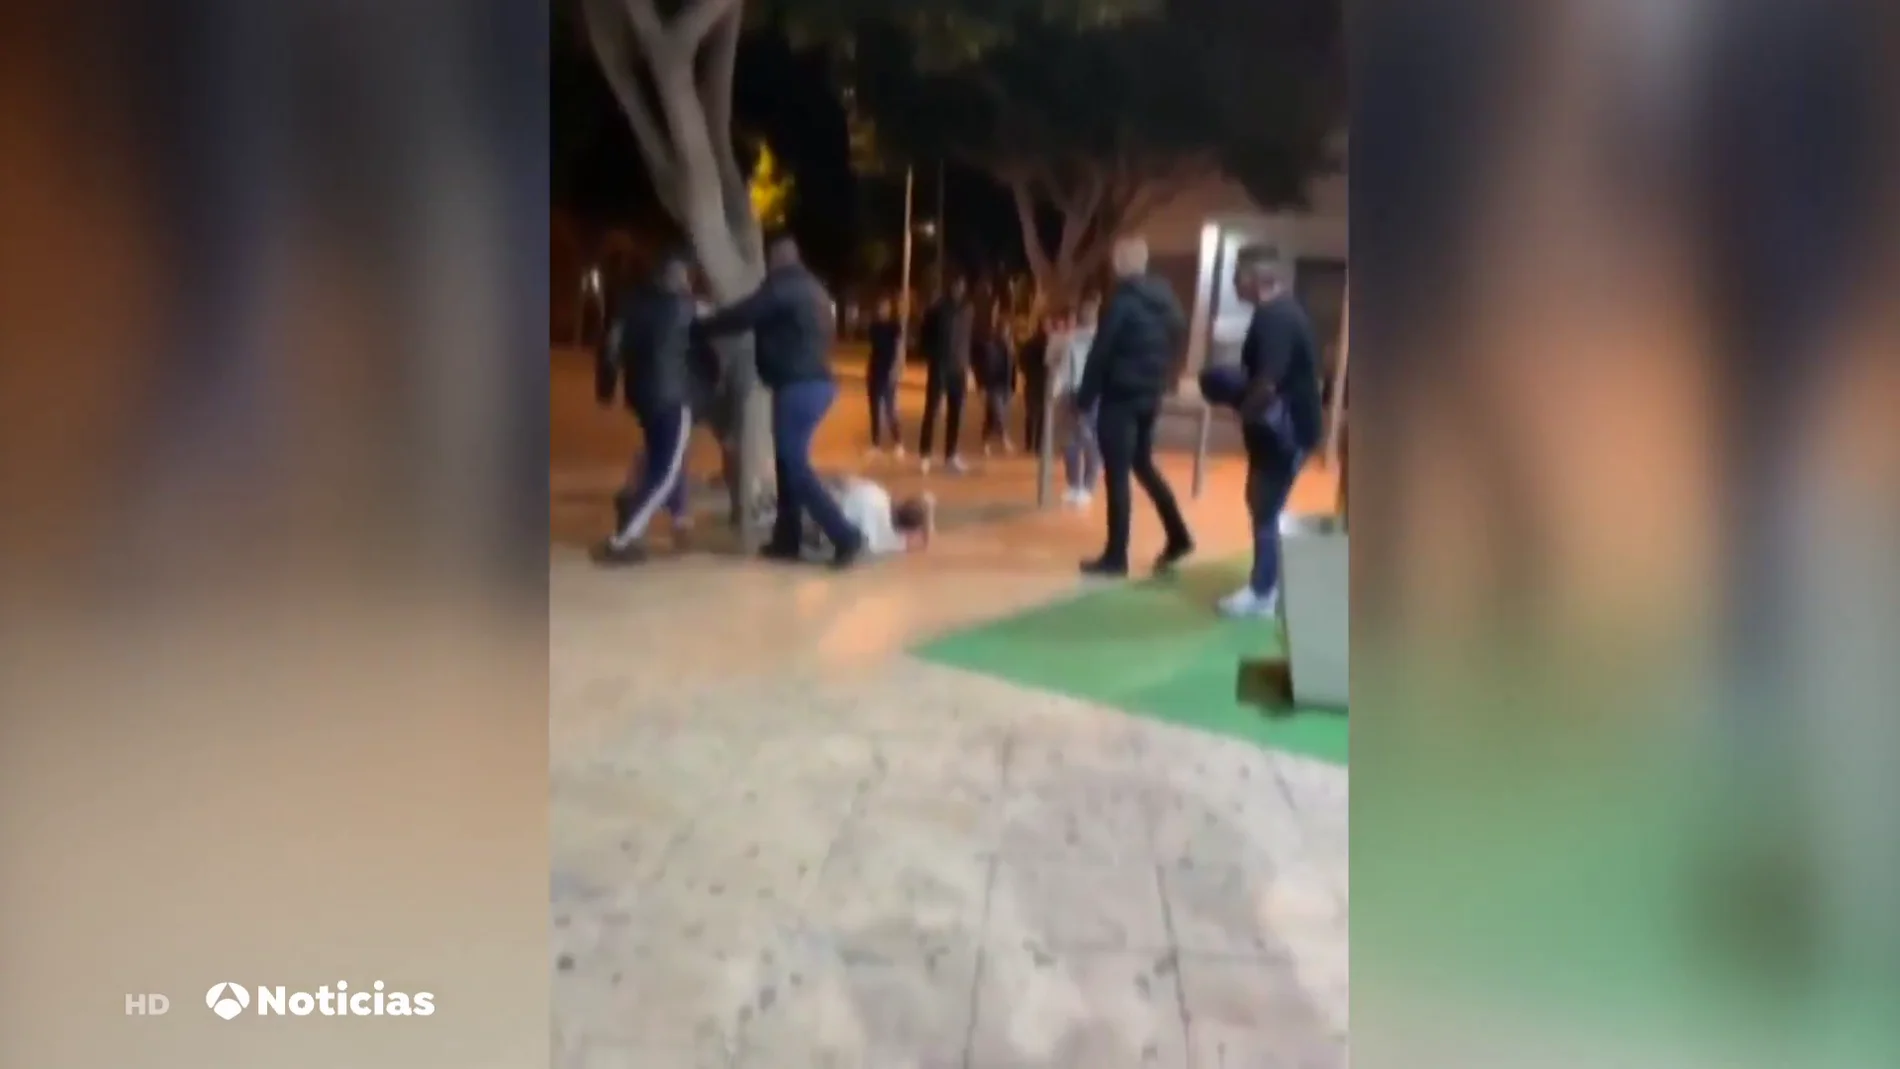 Investigan una brutal paliza en grupo a un joven frente a un local de ocio nocturno en Almería